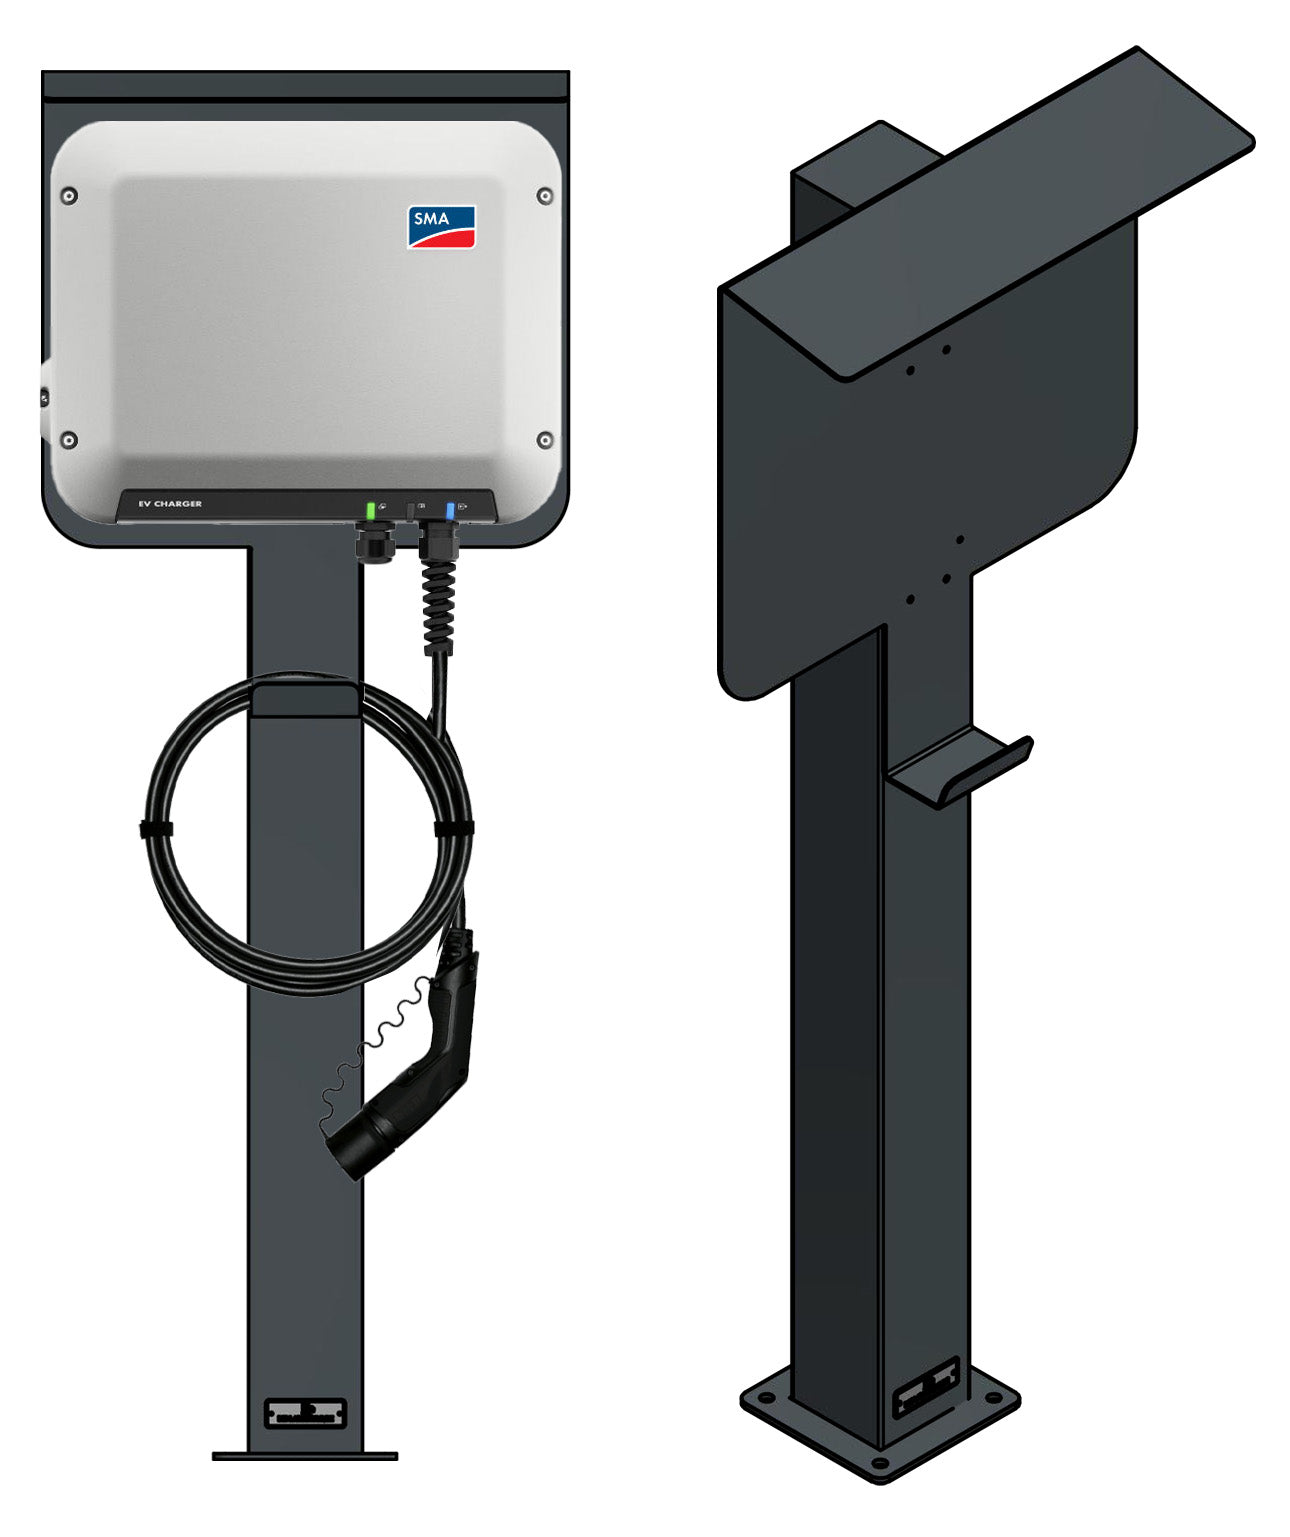 Laddningsstolpe lämplig för SMA EV-laddare Wallbox med tak | Stativ | Piedestal | Bas